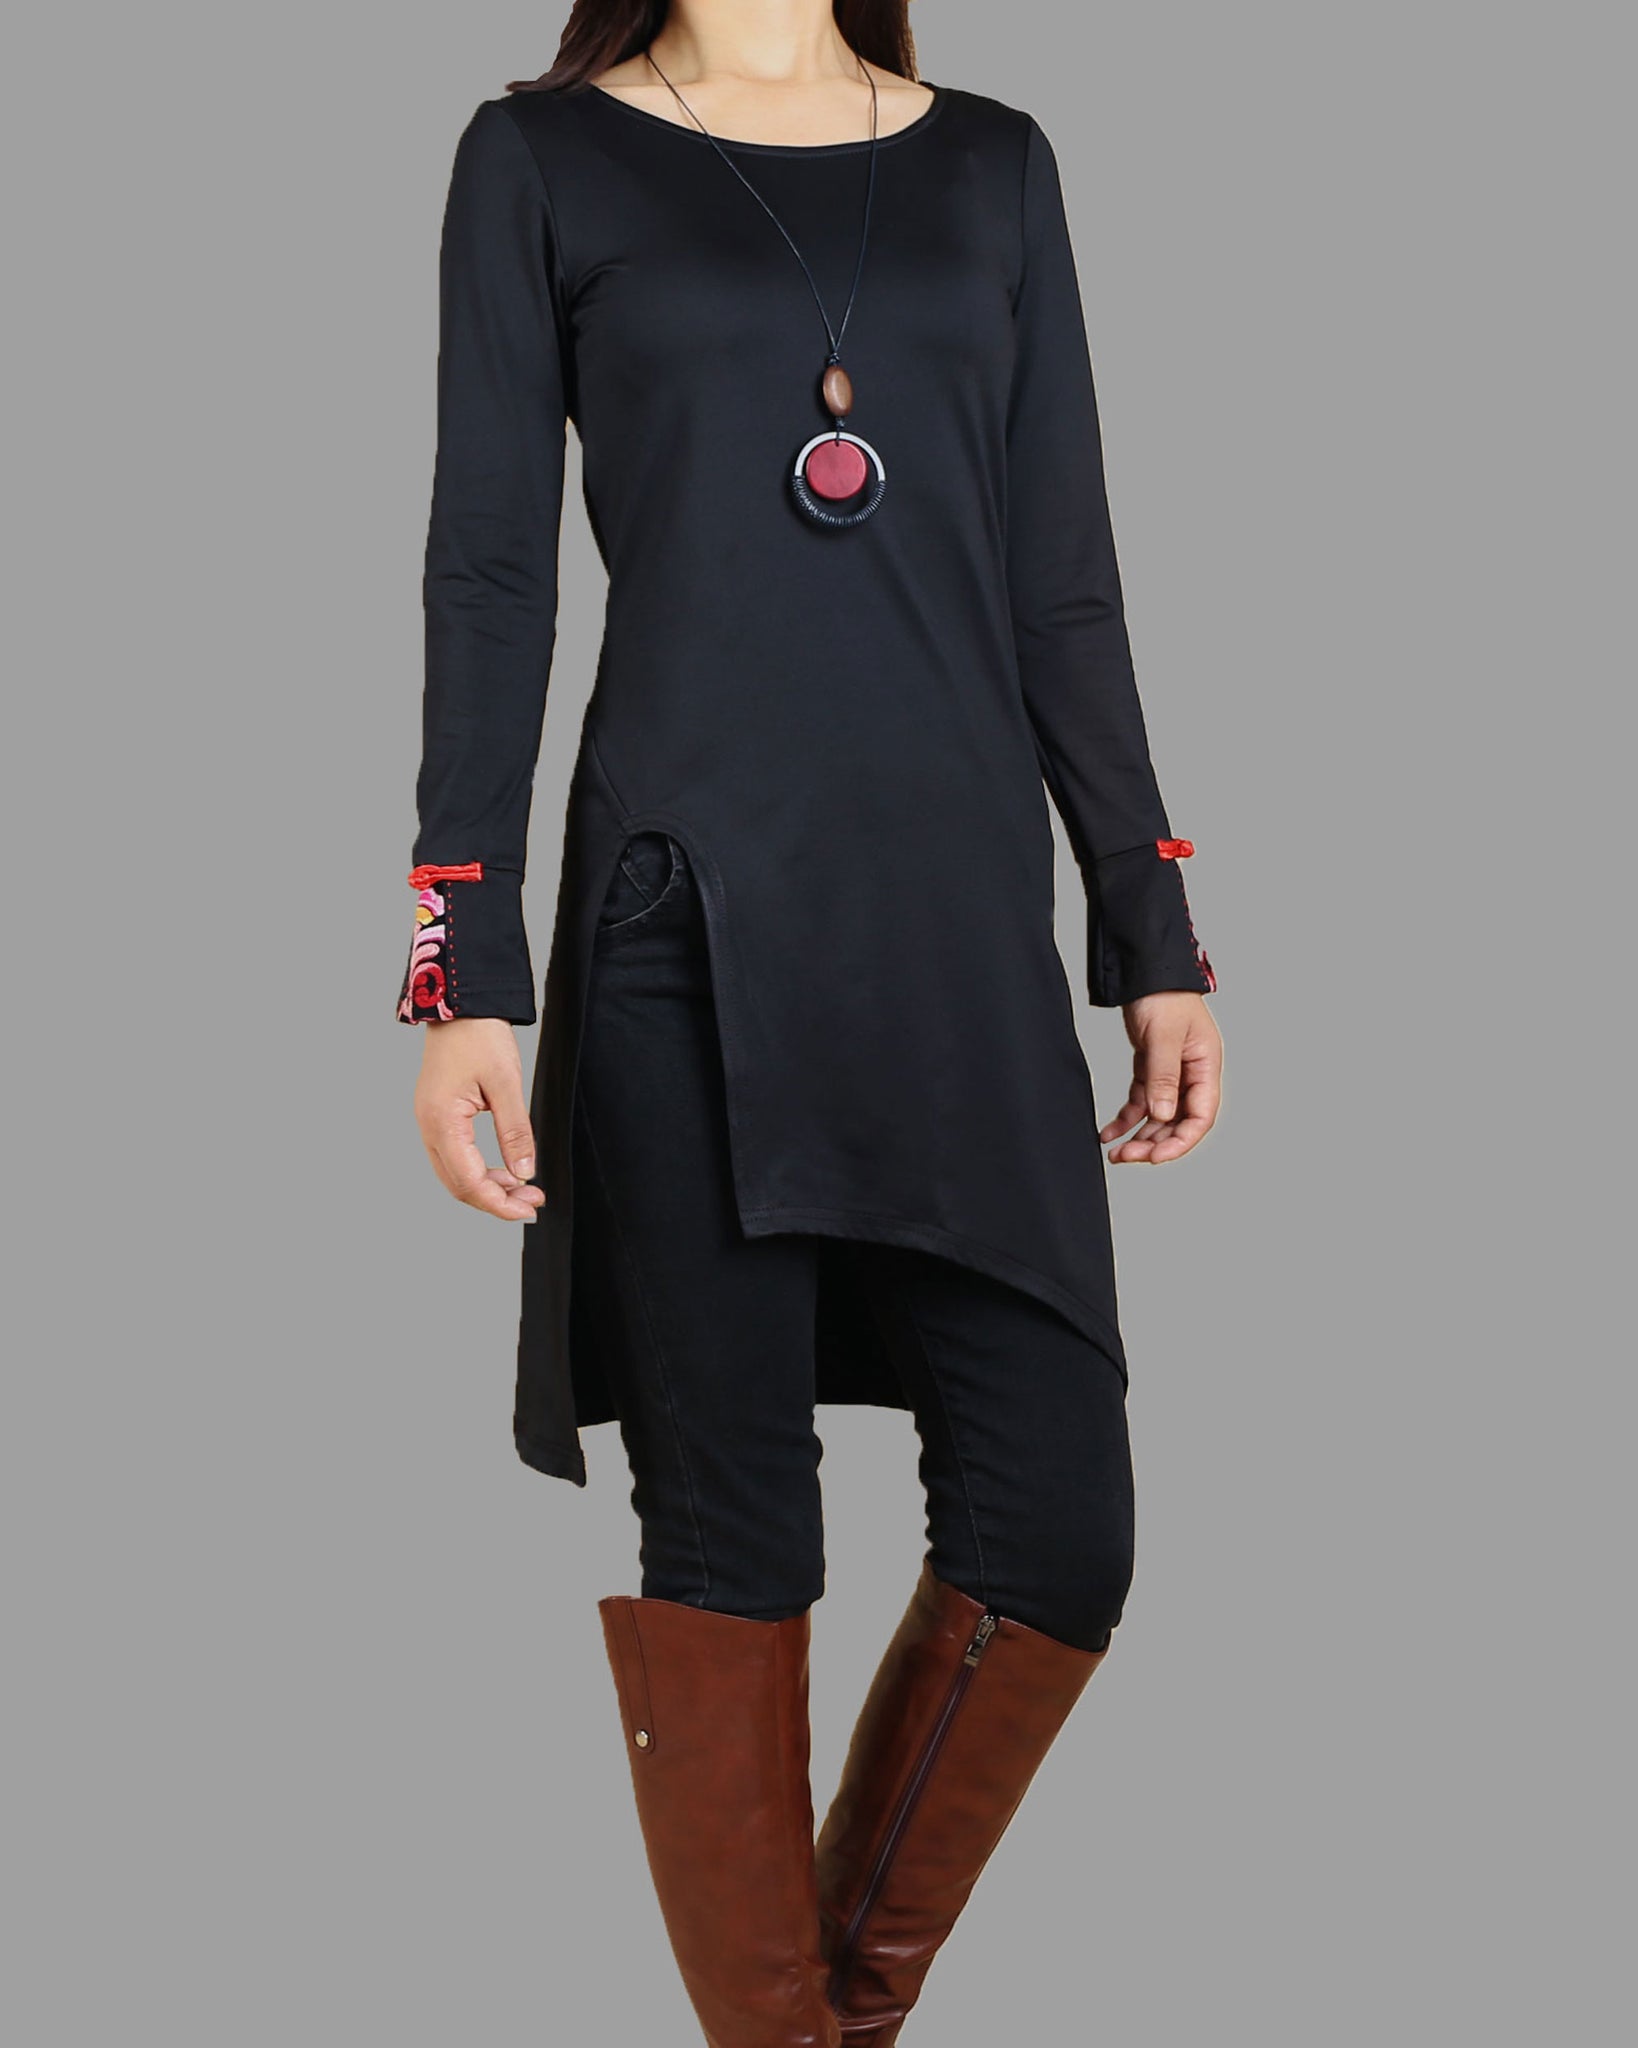 Women's Long Sleeve t-shirt/Asymmetrical Cotton tunic dress/black tuni –  lijingshop